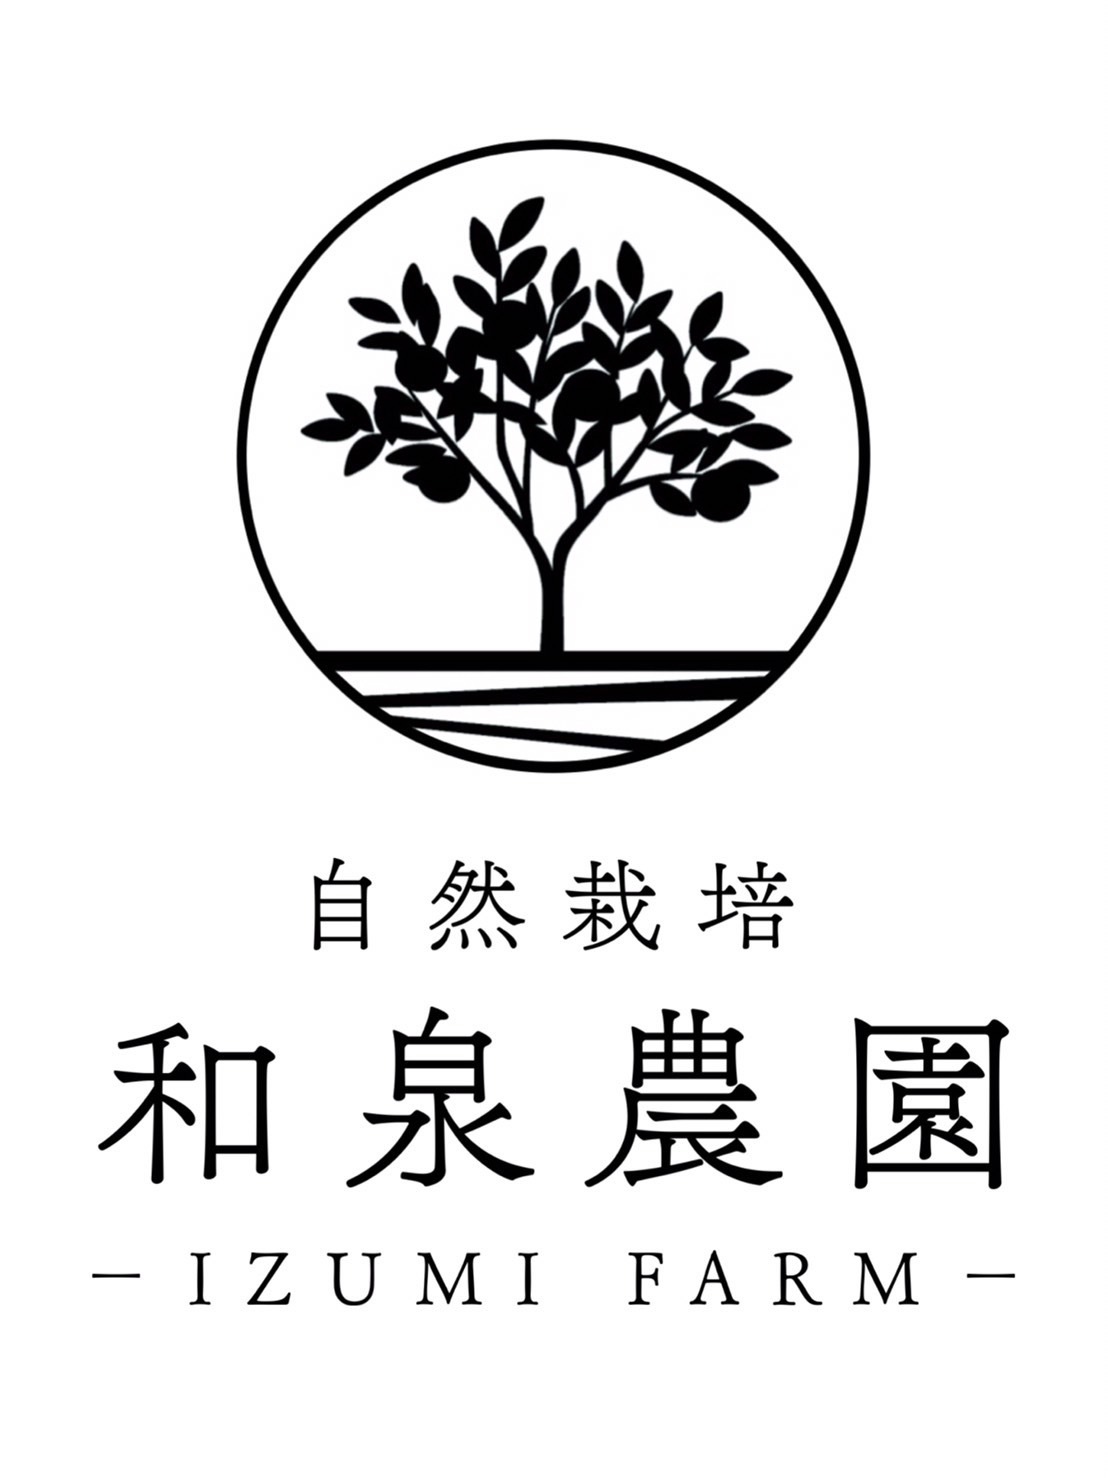 和泉農園ショッピングサイト  − SHOP IZUMI FARM −